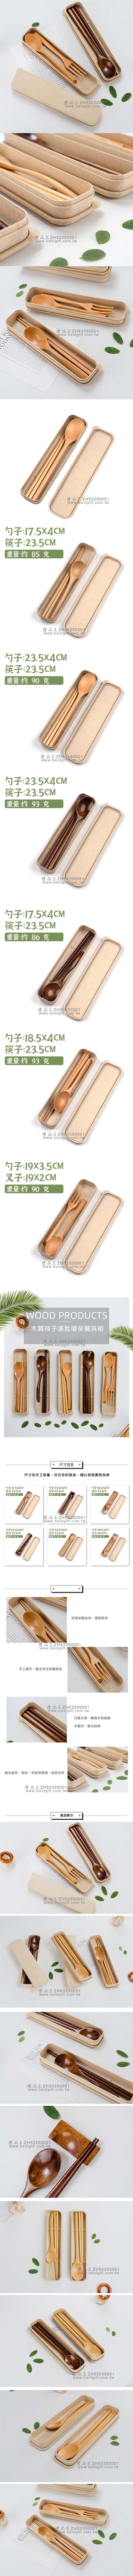 木質筷子湯匙環保餐具組